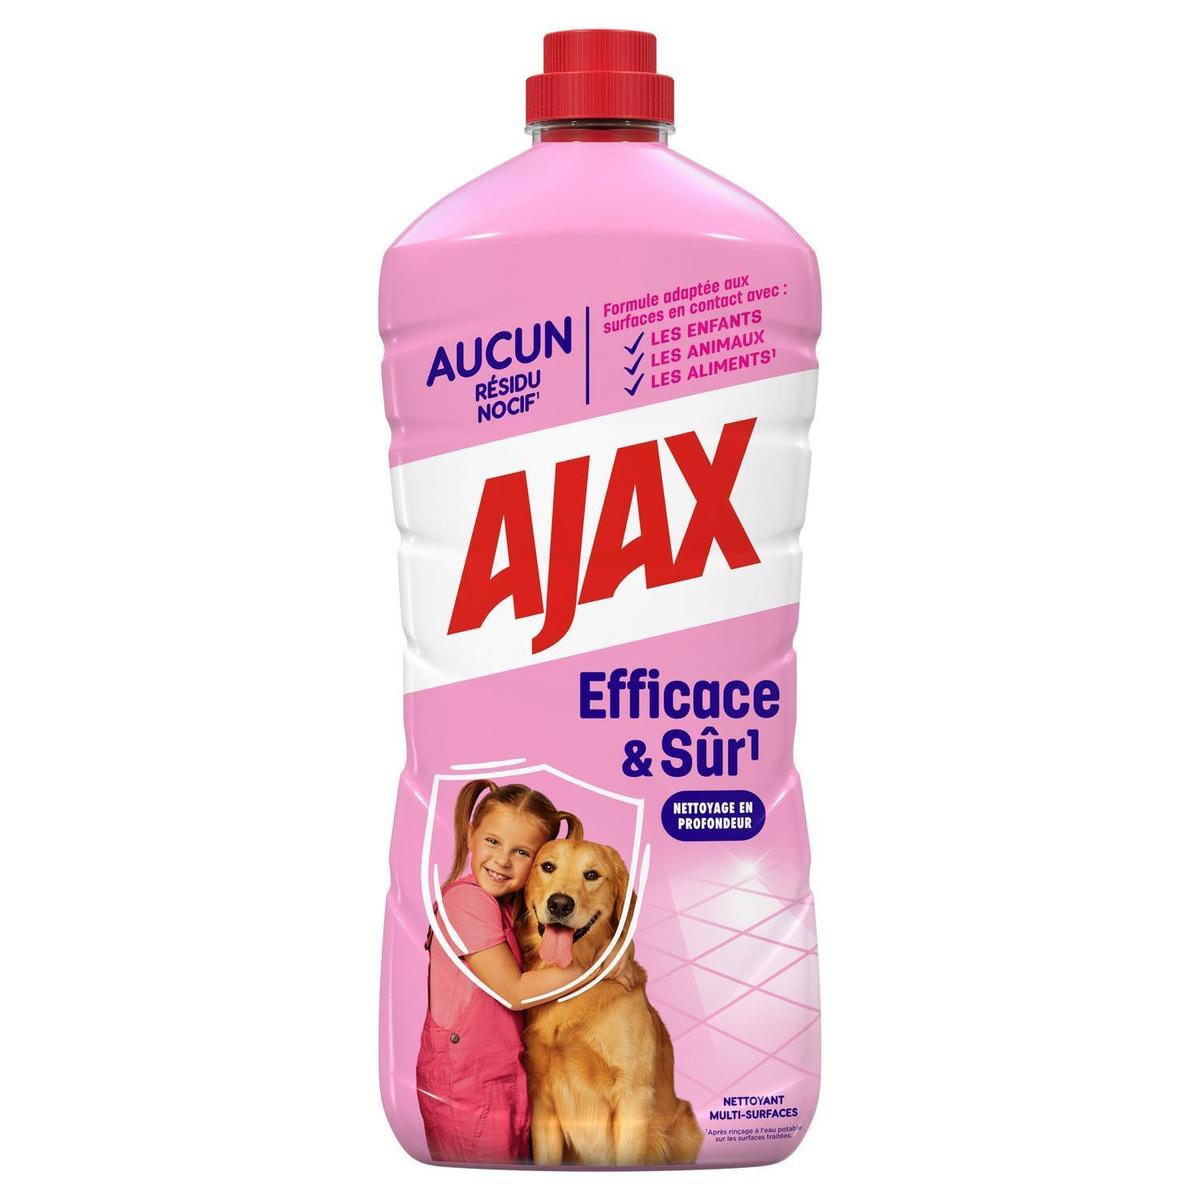 Ajax Nettoyant pour sol parquet (1000ml) acheter à prix réduit